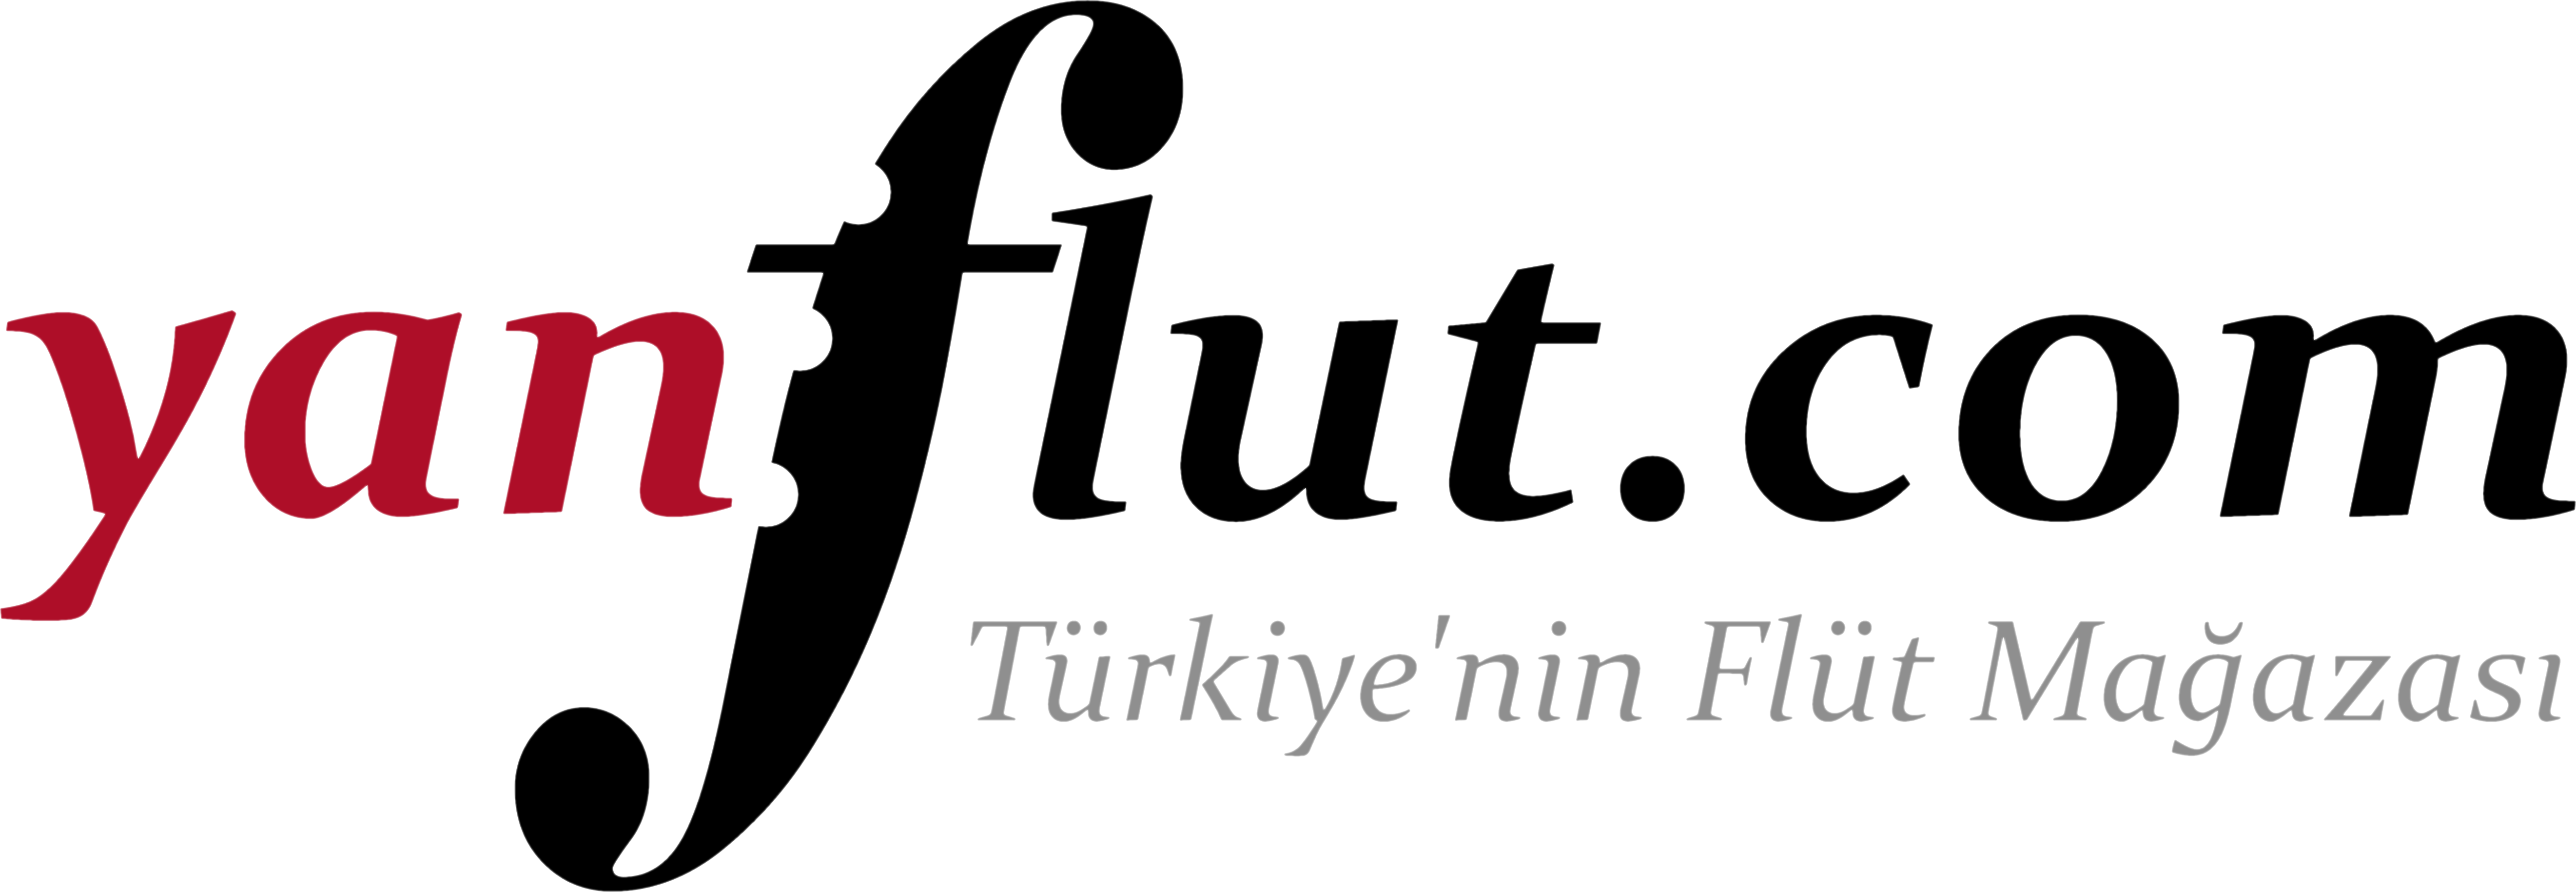 Türkiye’nin Flüt Mağazası